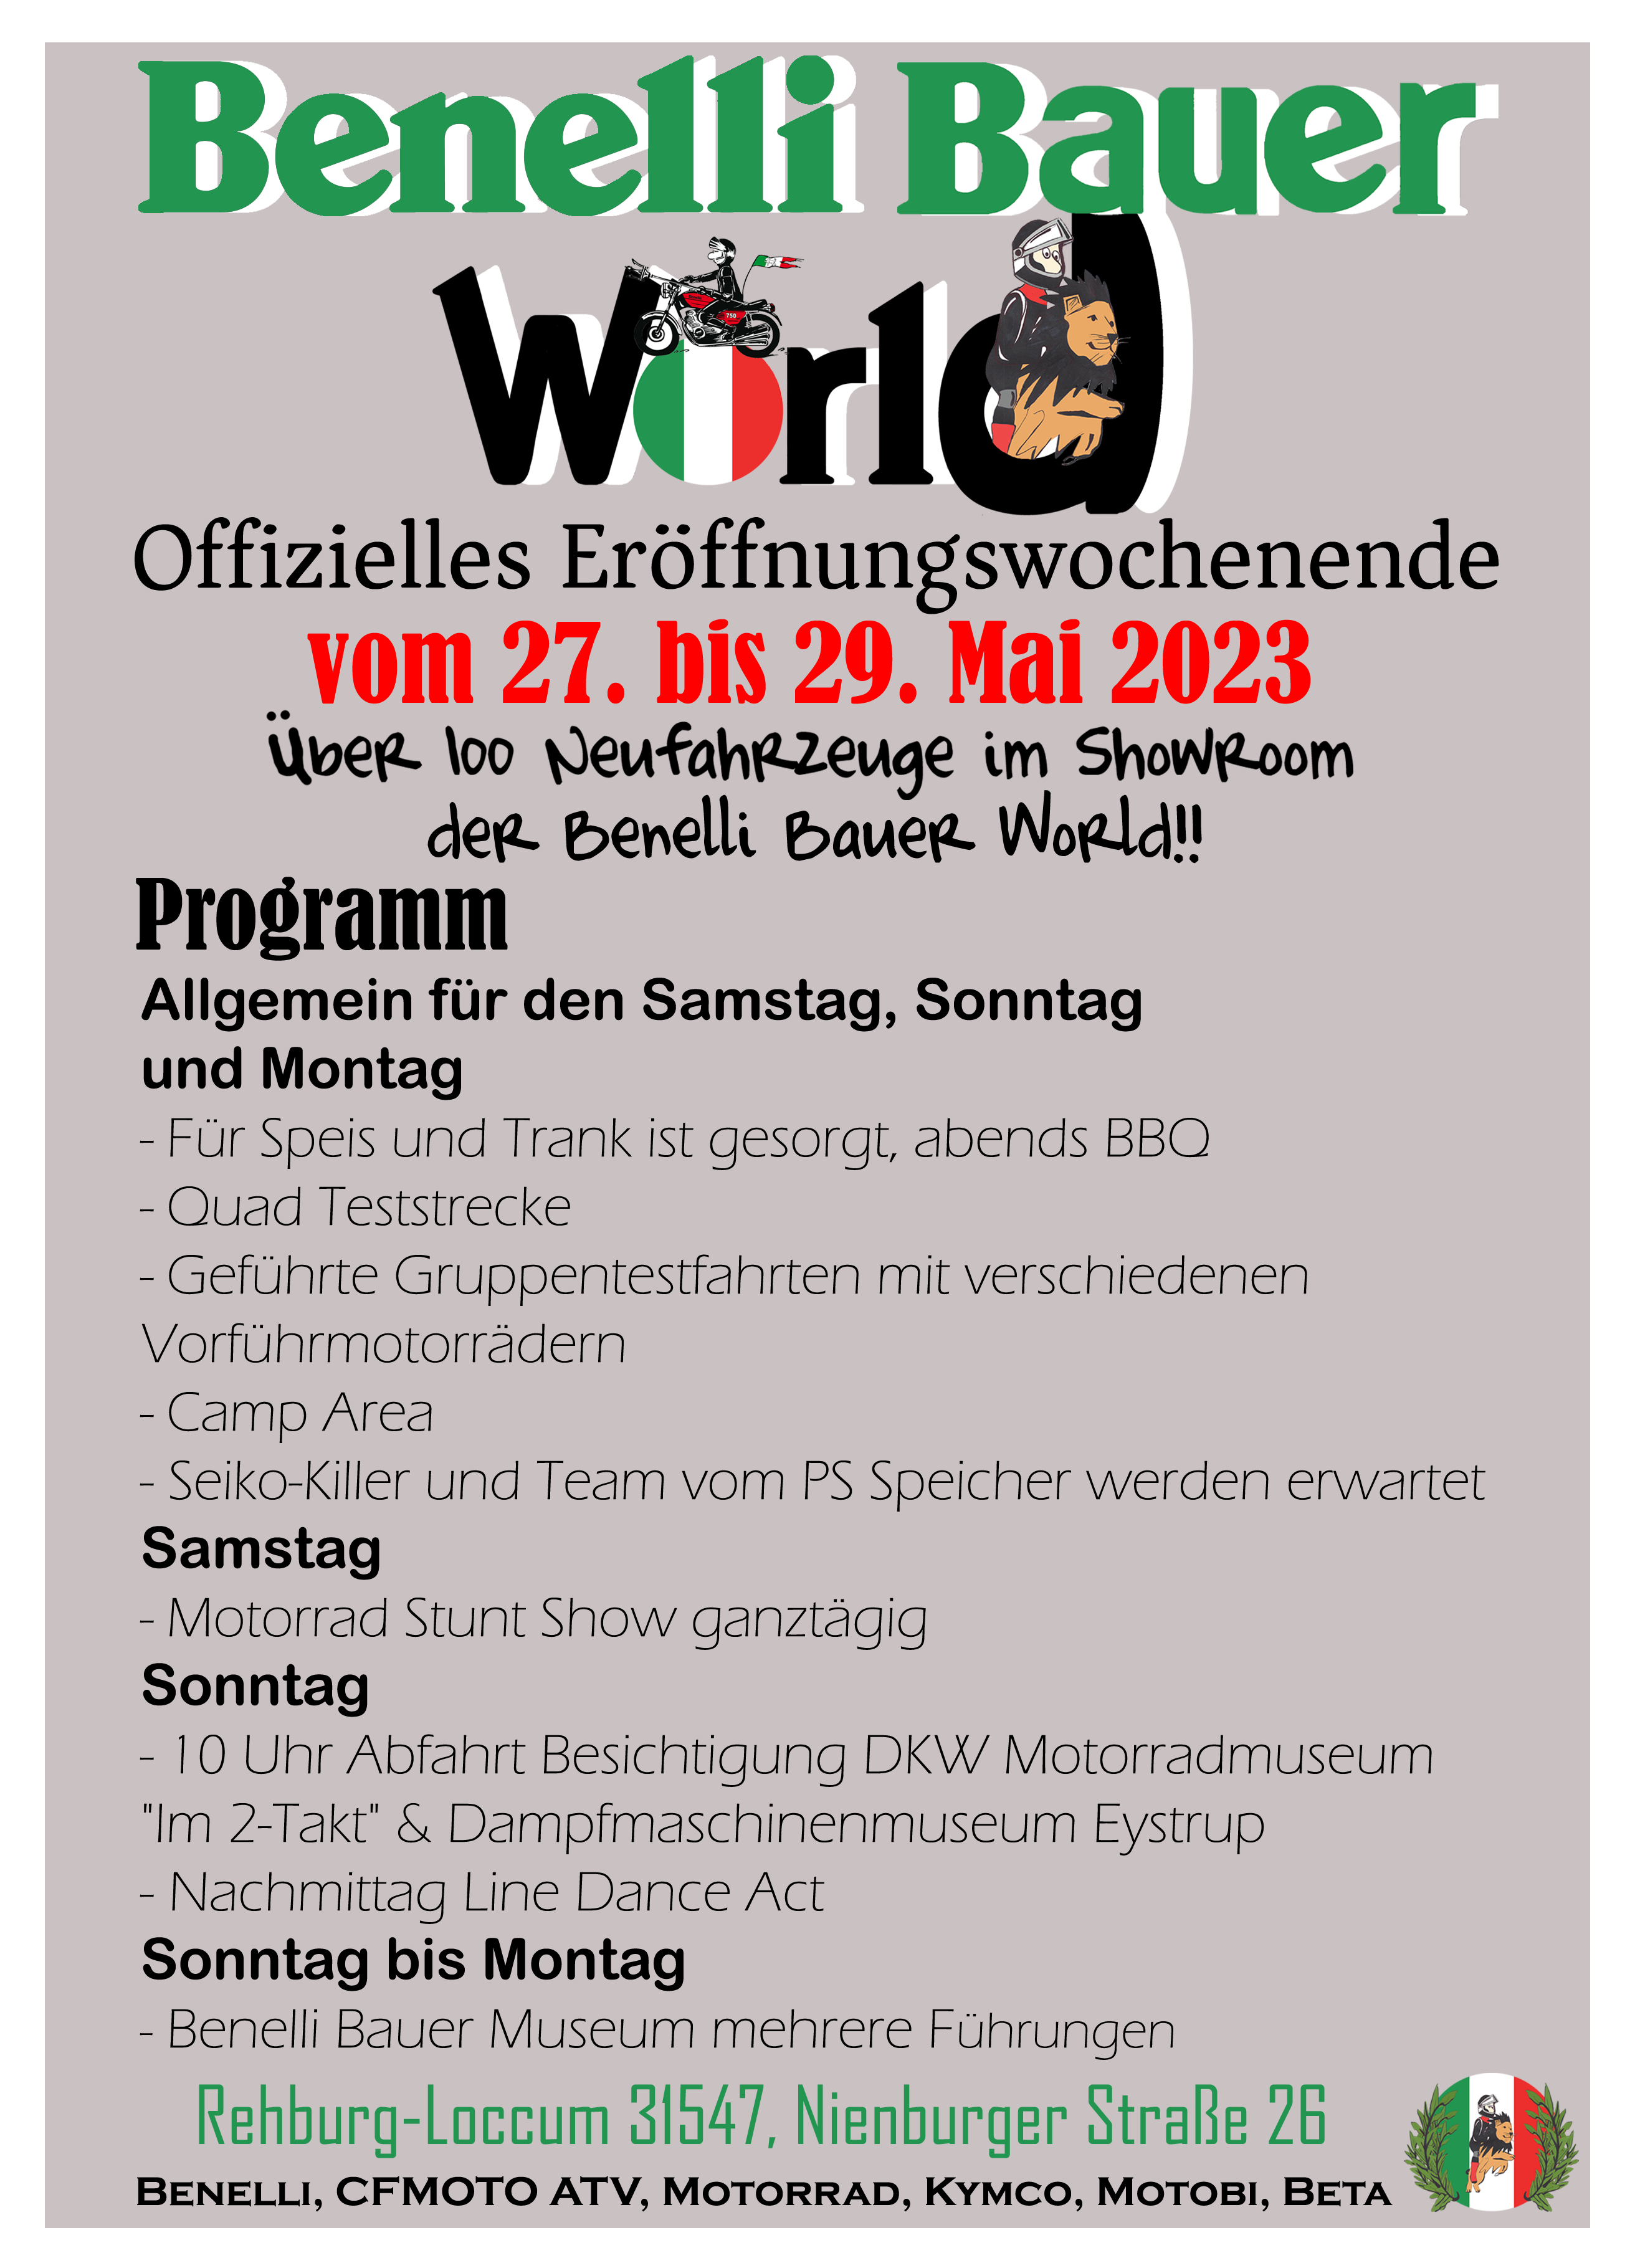 Benelli_Bauer_World_Programm_Deutsch_Fertig_neu_Kopie